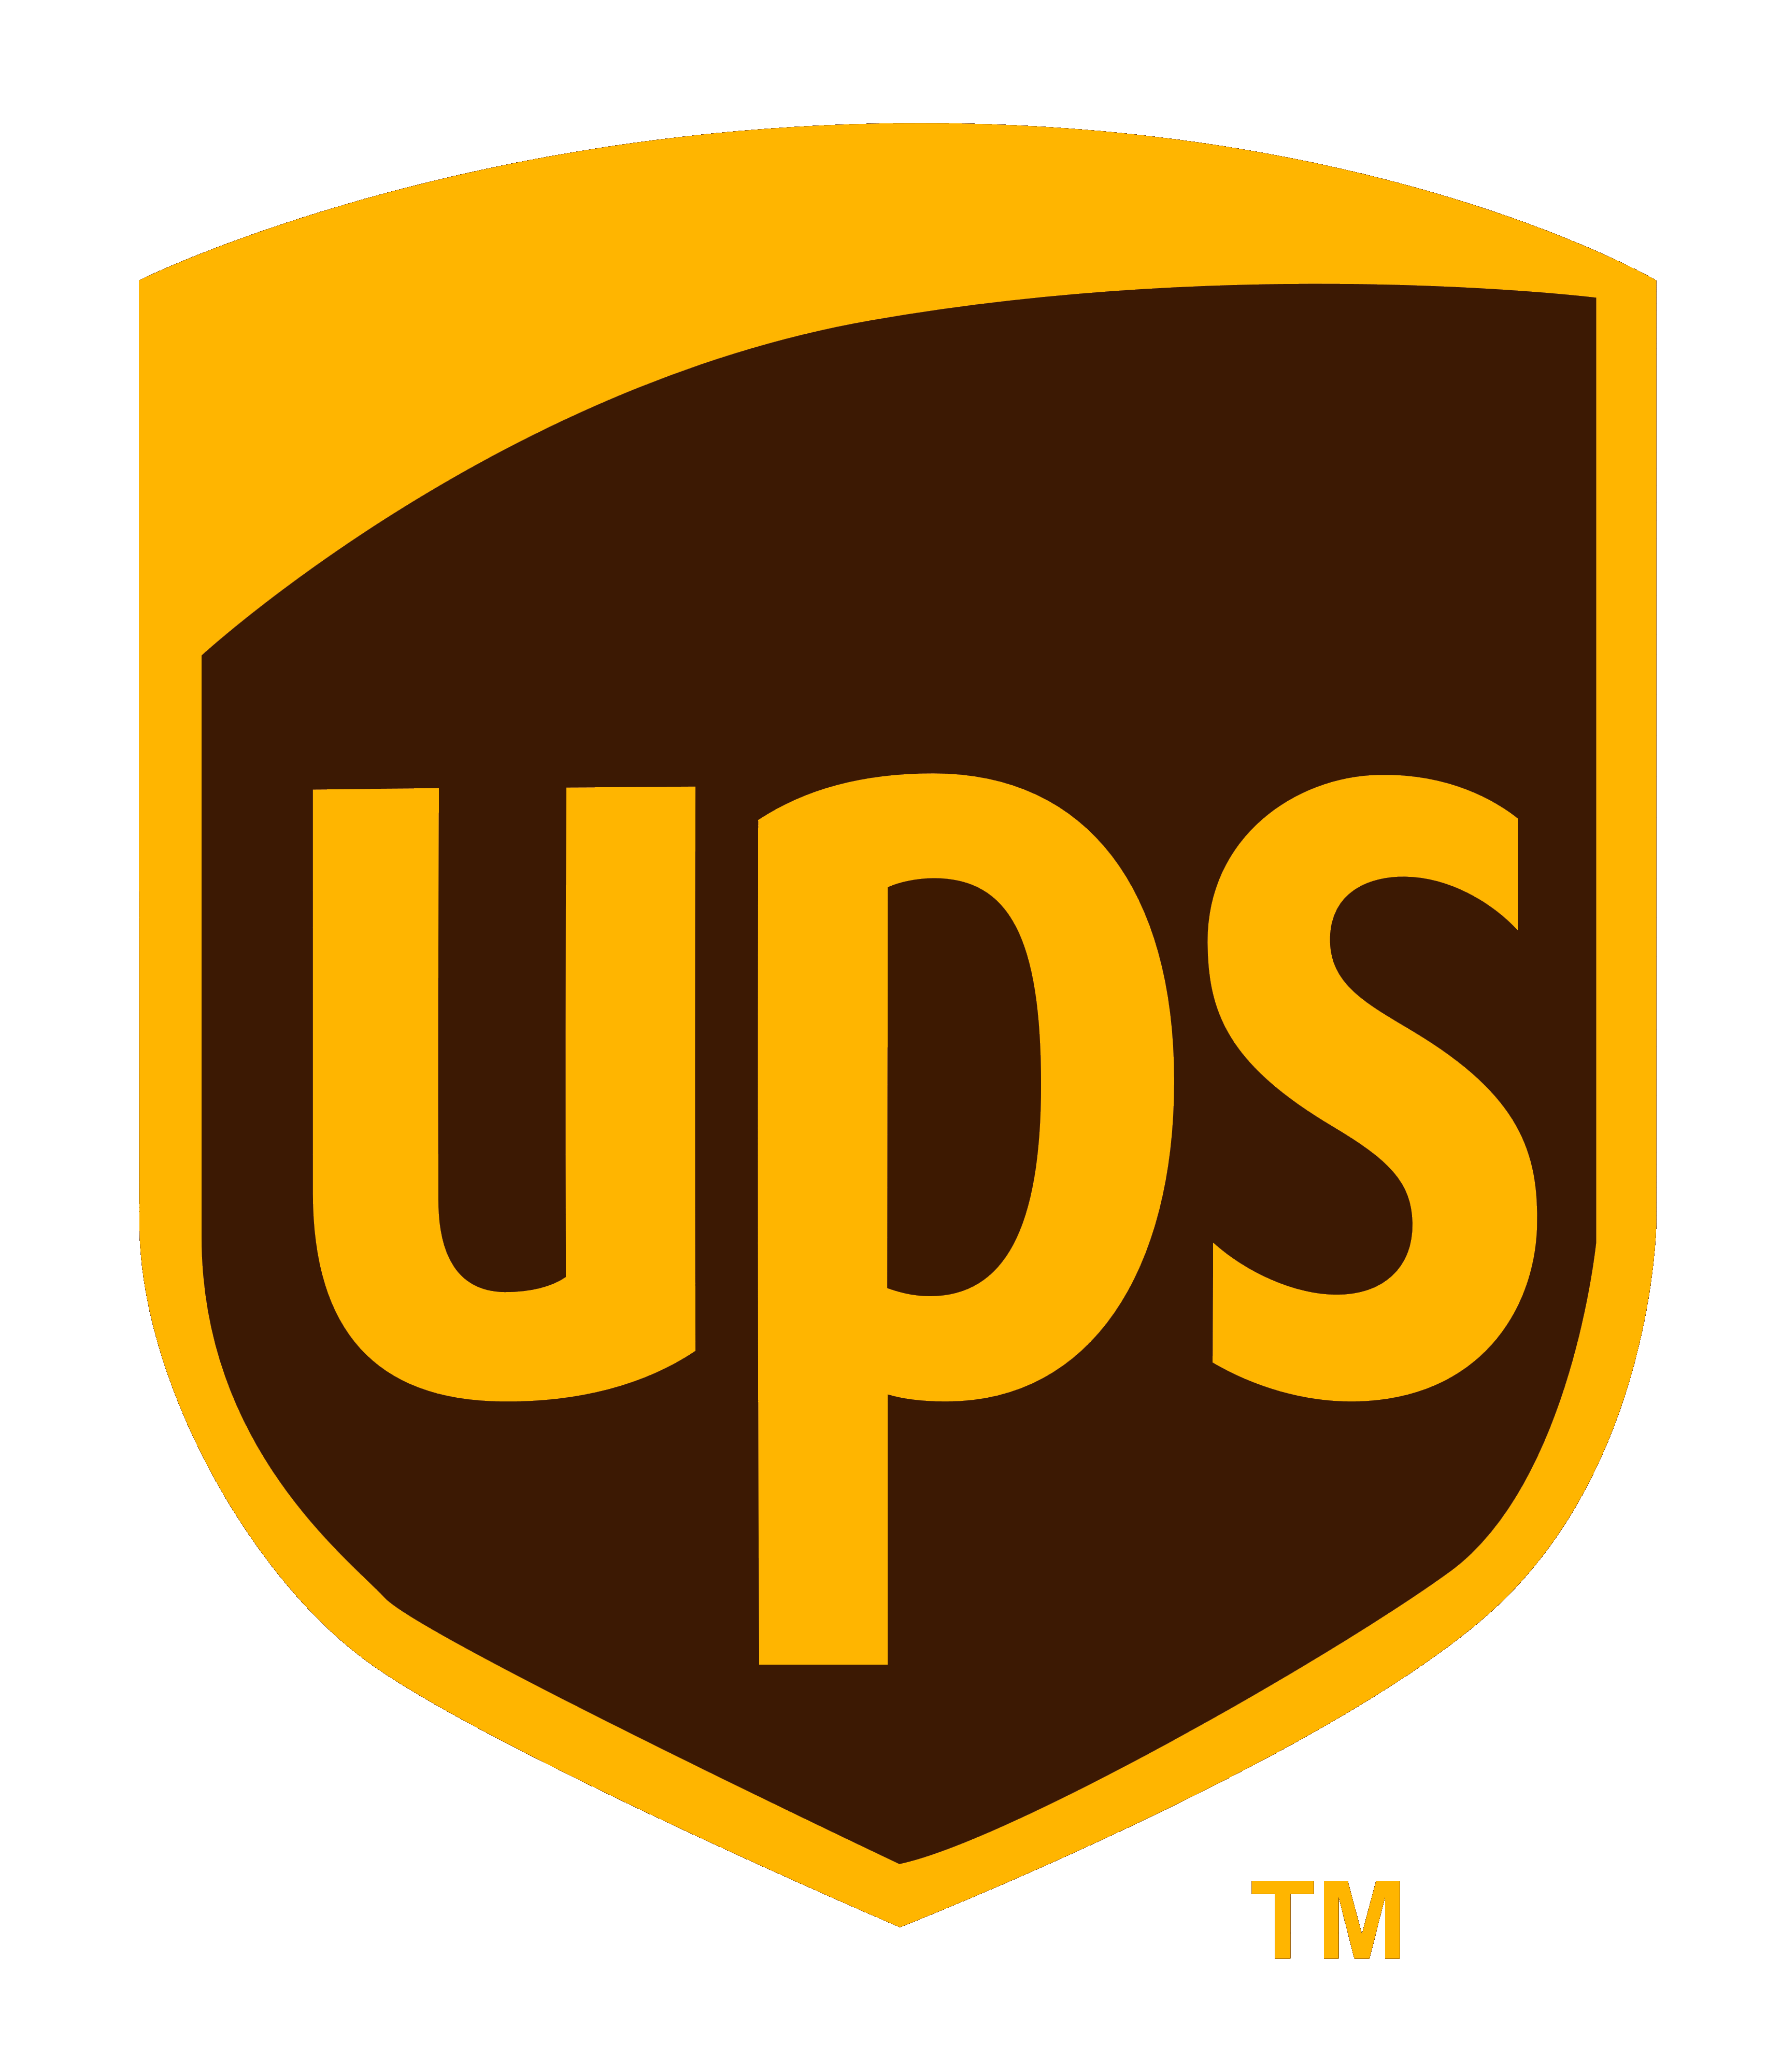 UPS_logo_logotype